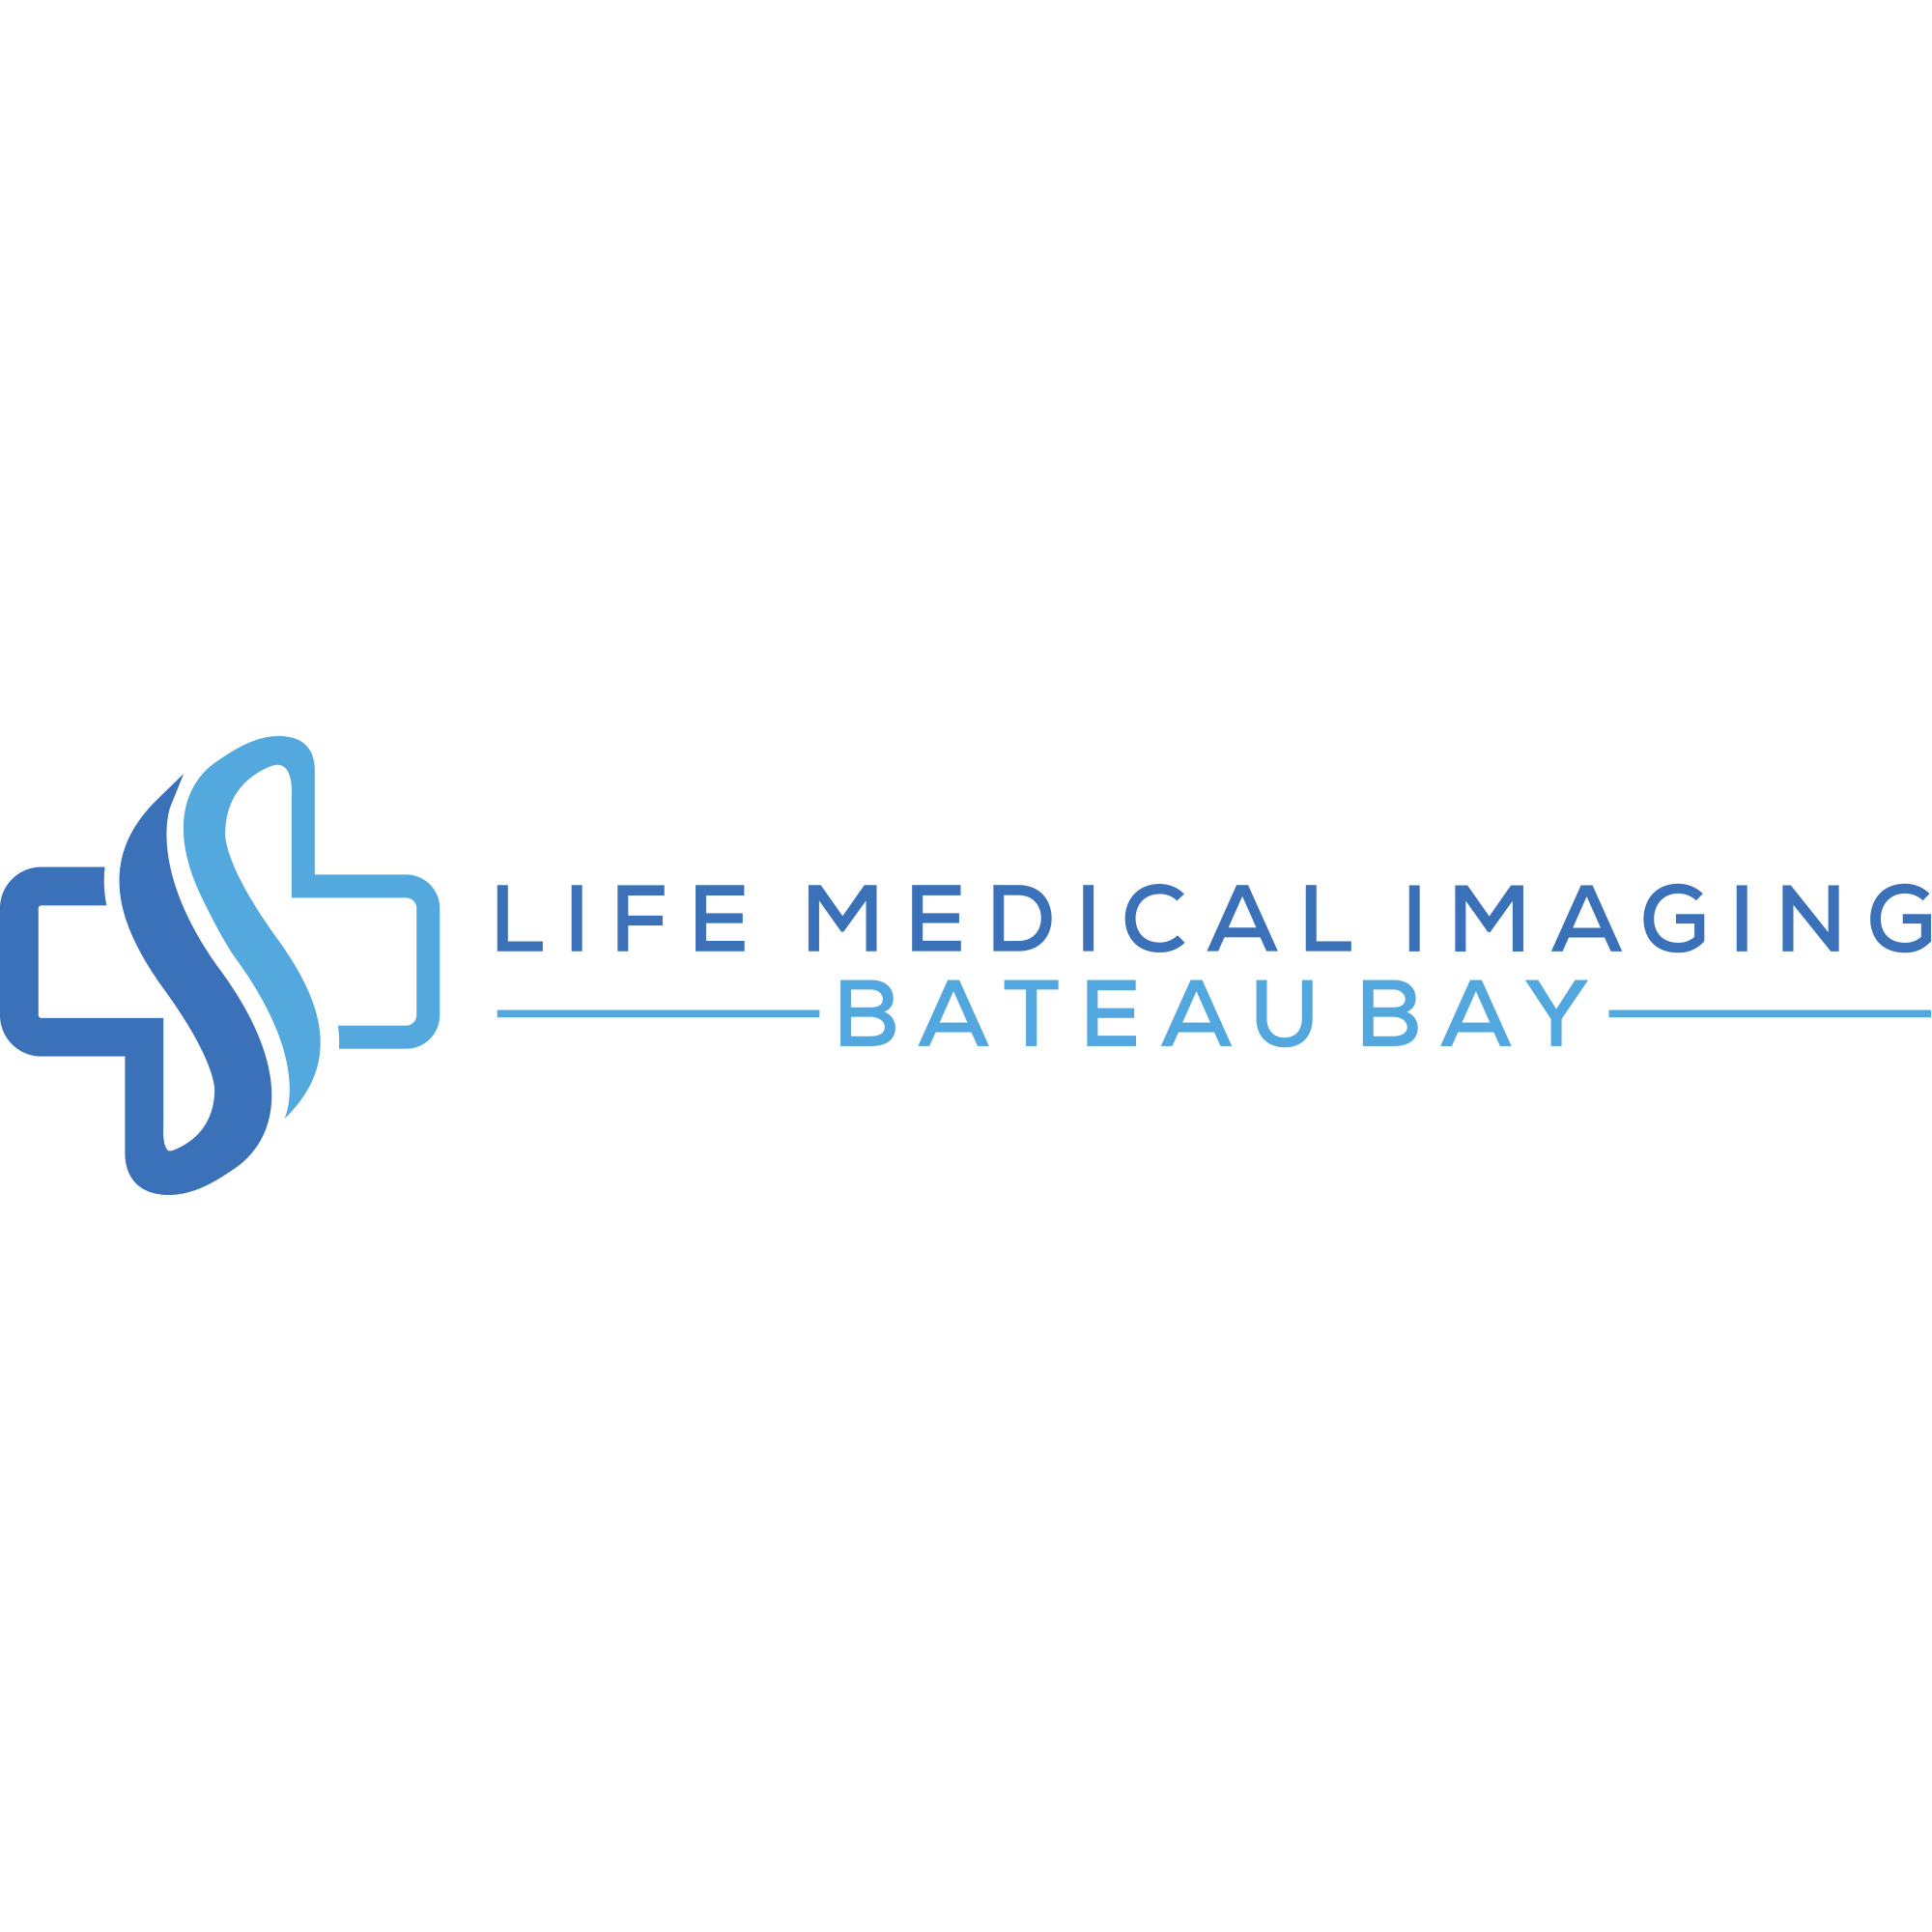 Foto de Life Medical Imaging - Bateau Bay Oberon